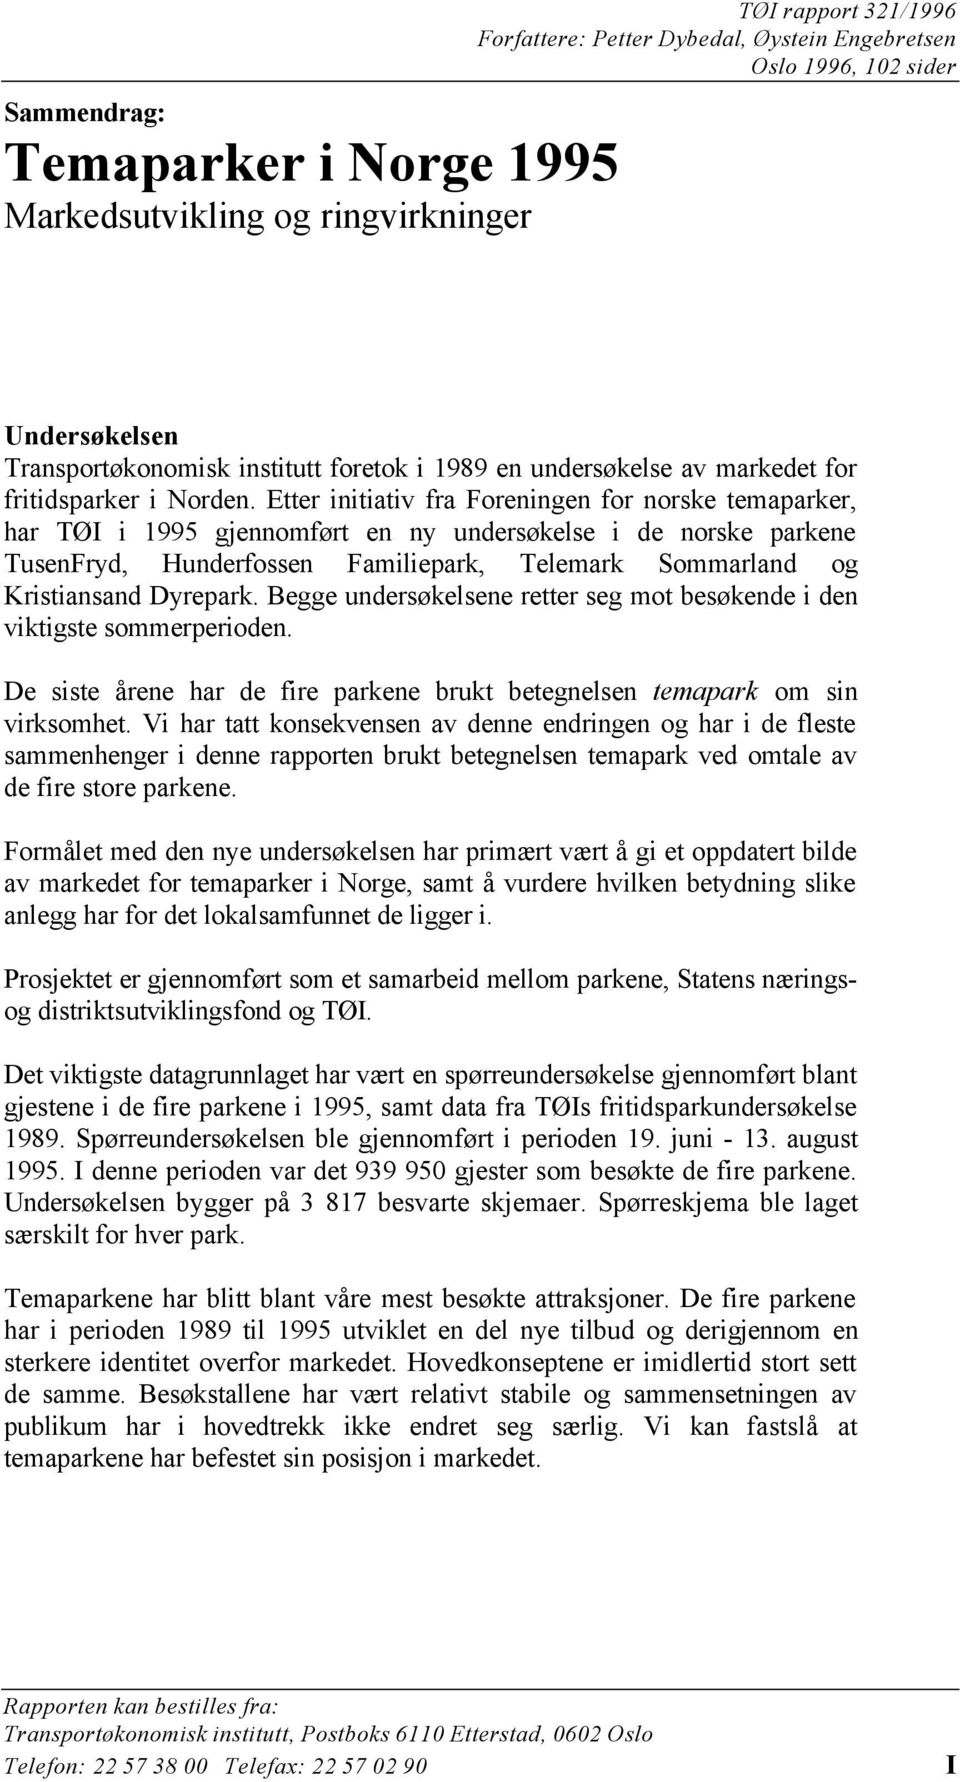 Etter initiativ fra Foreningen for norske temaparker, har TØI i 1995 gjennomført en ny undersøkelse i de norske parkene TusenFryd, Hunderfossen Familiepark, Telemark Sommarland og Kristiansand